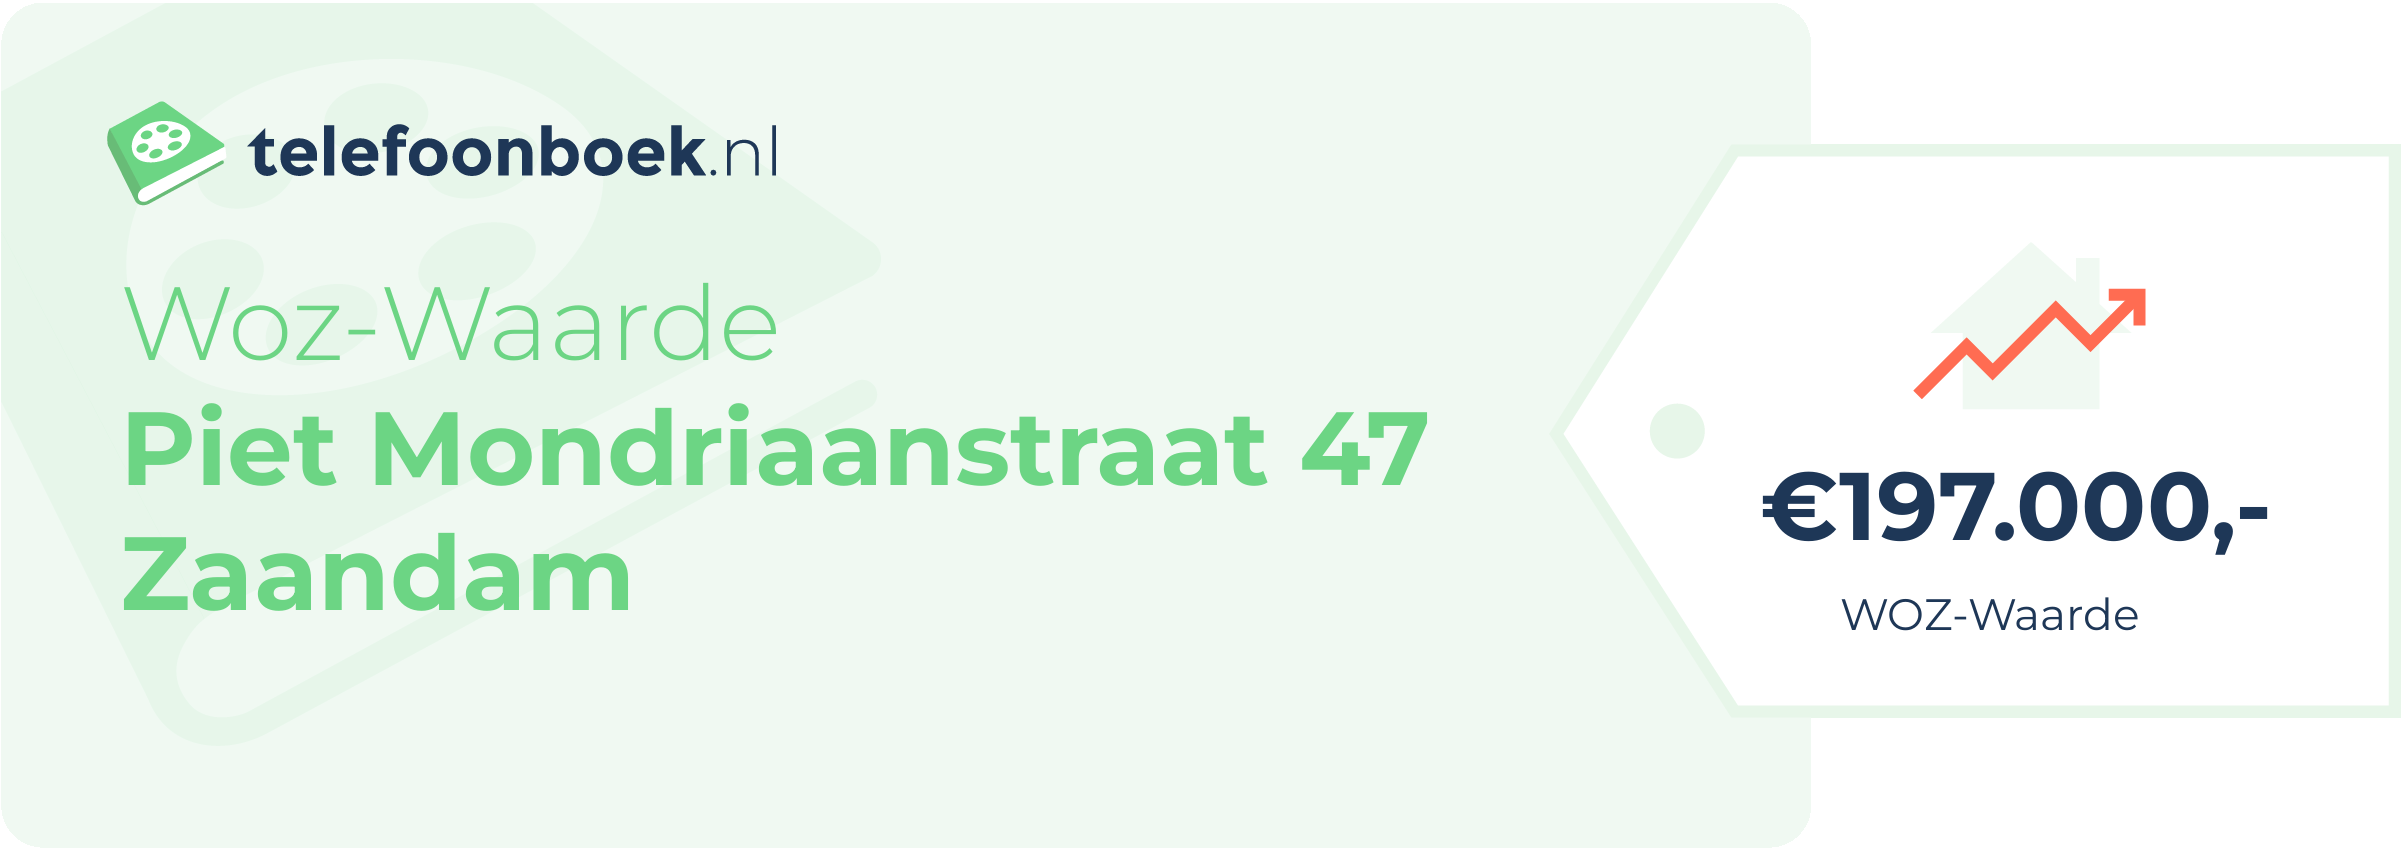 WOZ-waarde Piet Mondriaanstraat 47 Zaandam